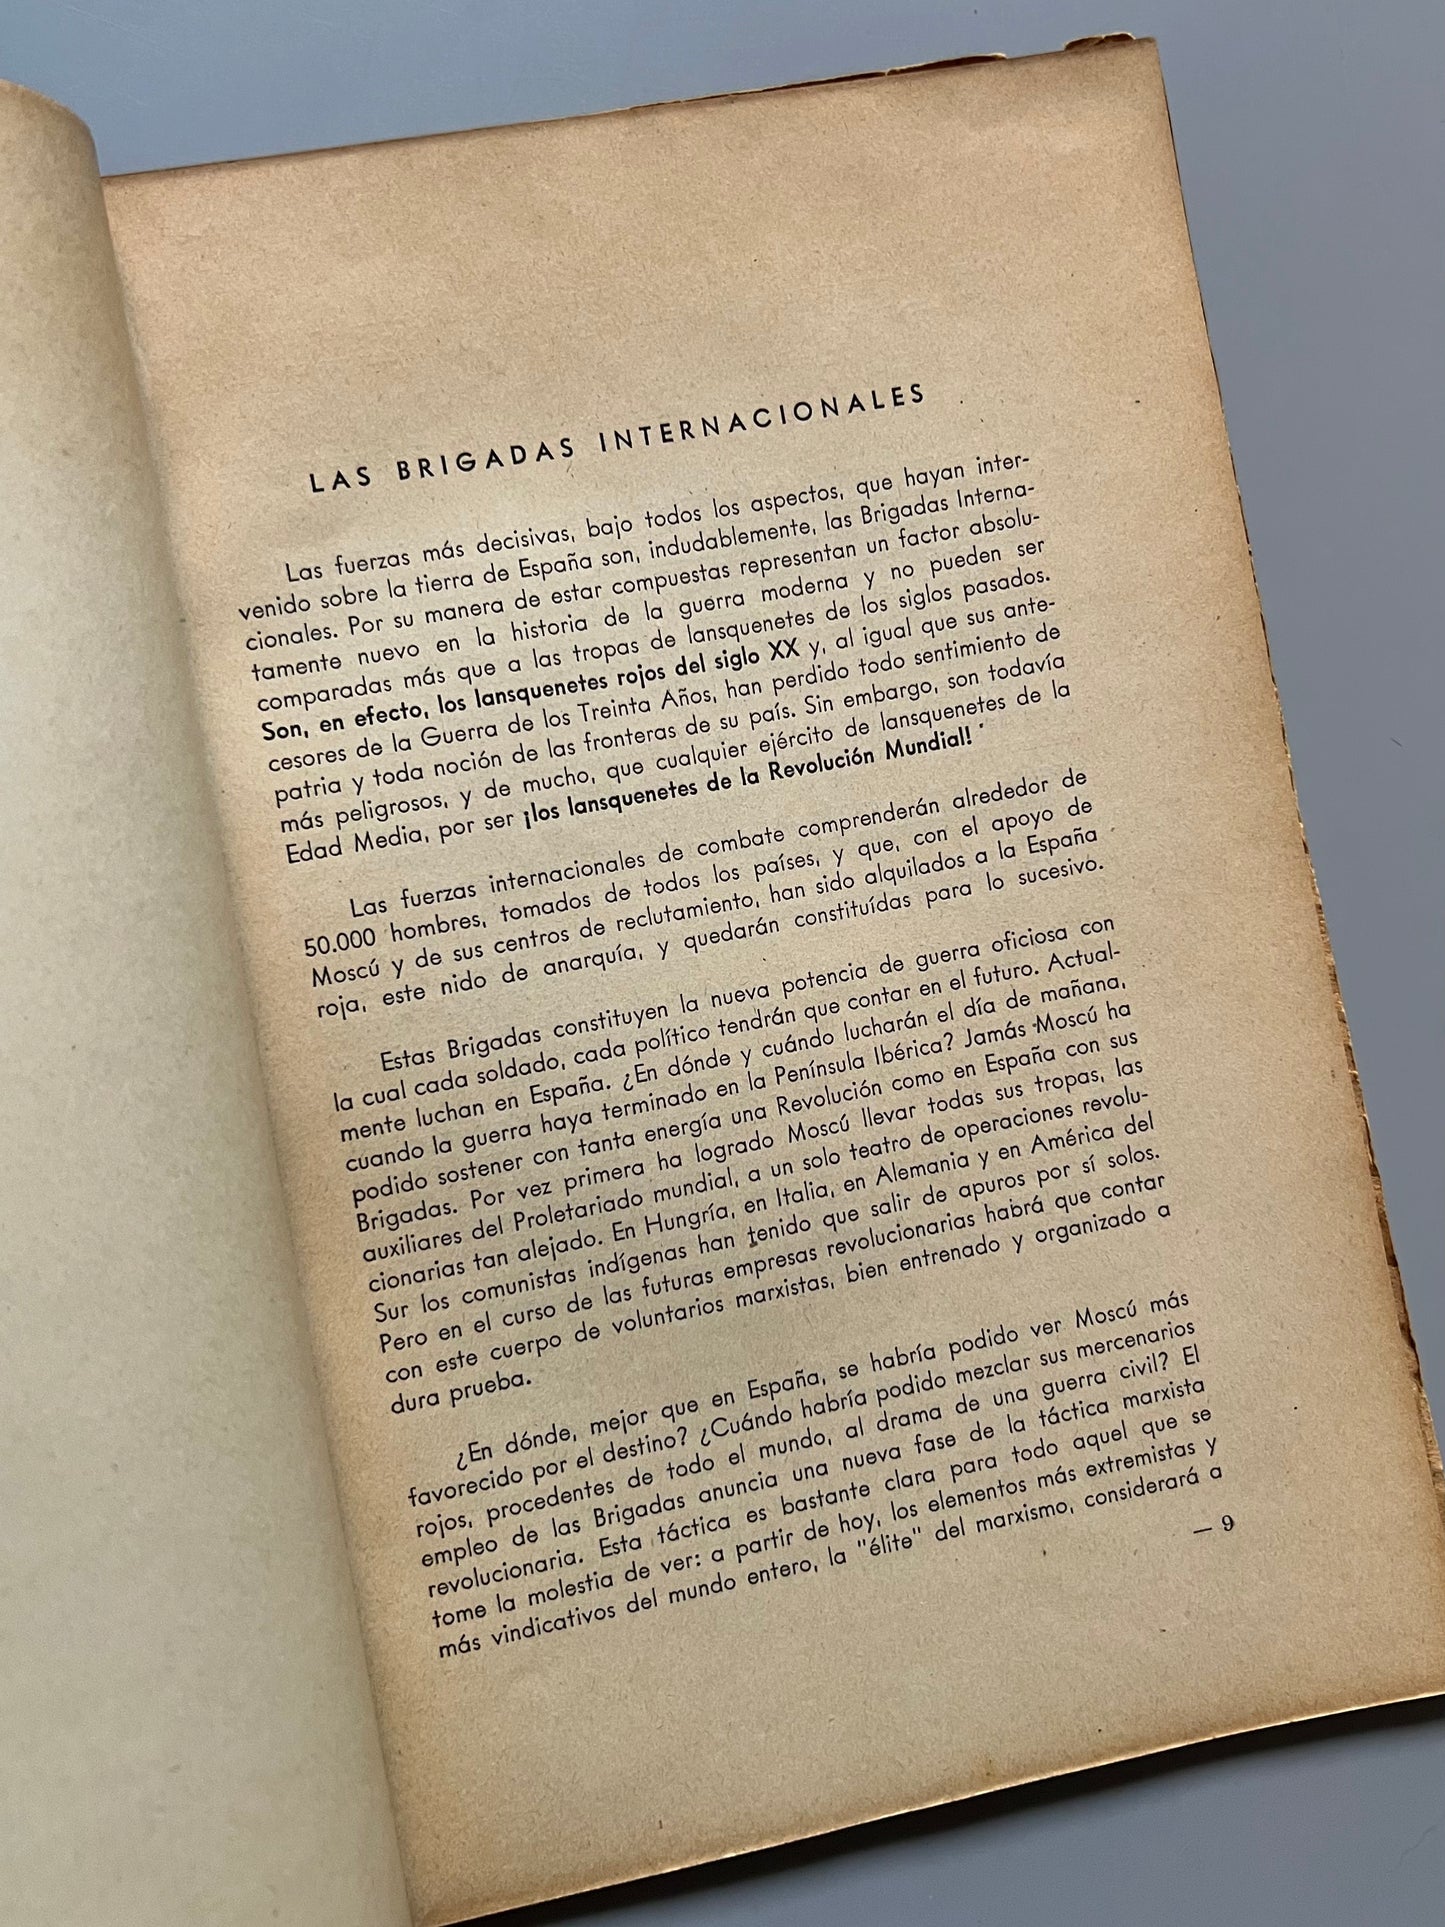 Las brigadas internacionales según testimonio de sus artífices - Publicación del CIAS, ca. 1939